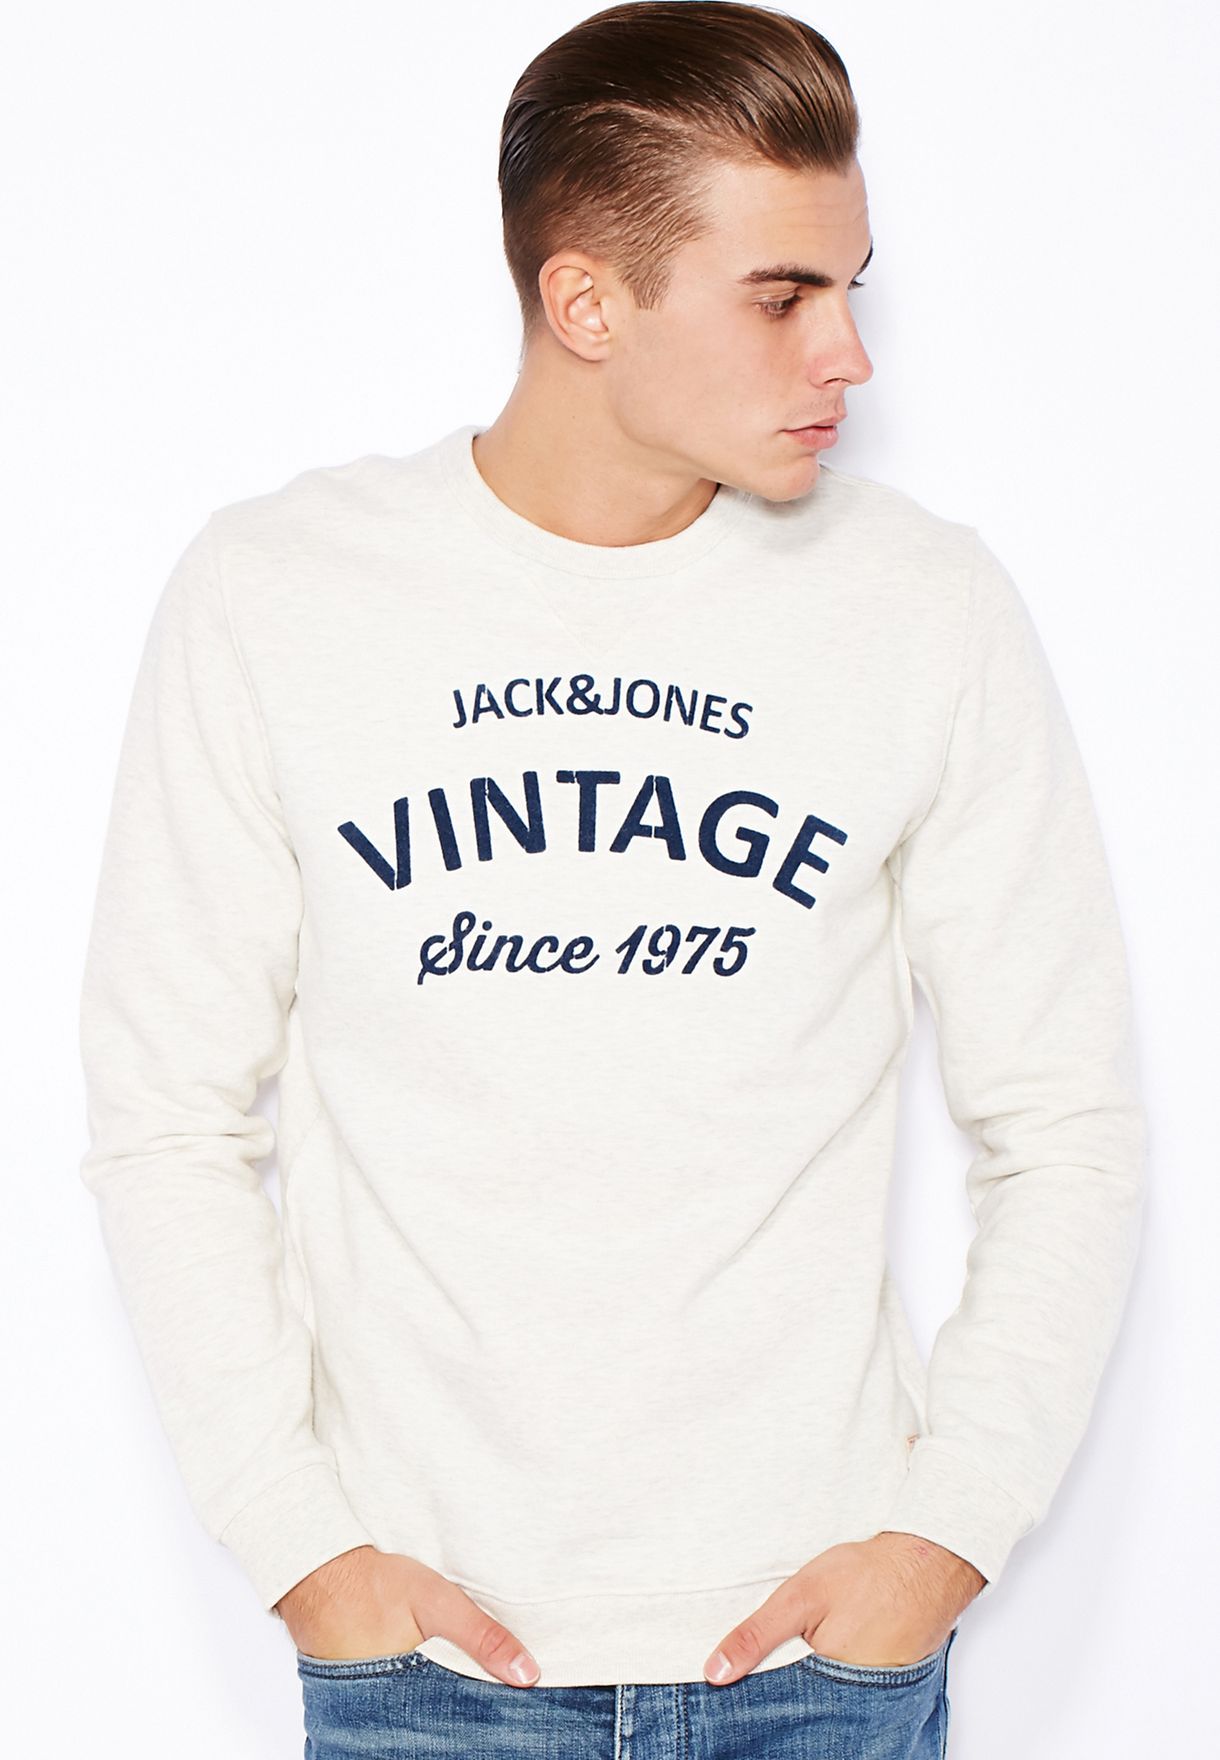 Schatting amusement cijfer Buy Jack Jones white Vintage Sweatshirt for Men in MENA, Worldwide